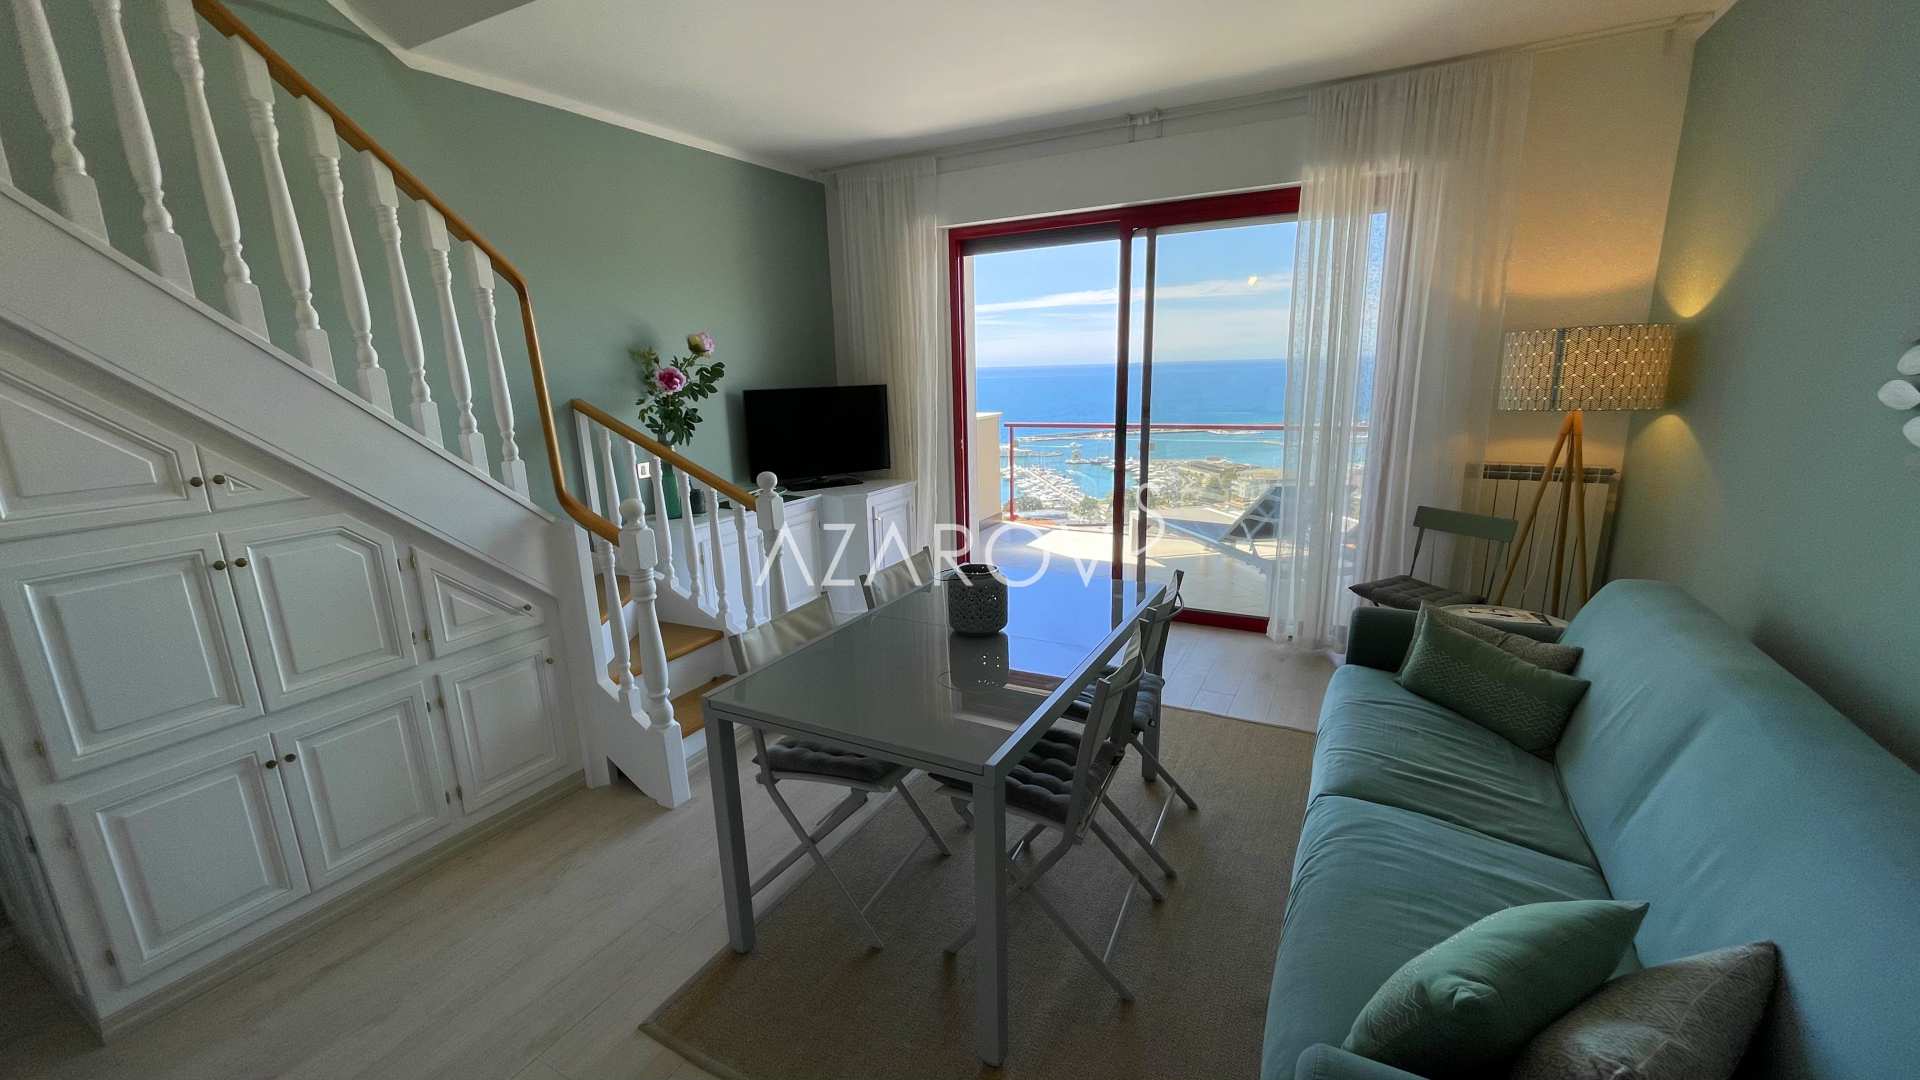 Appartement de deux chambres à Sanremo au bord de la mer